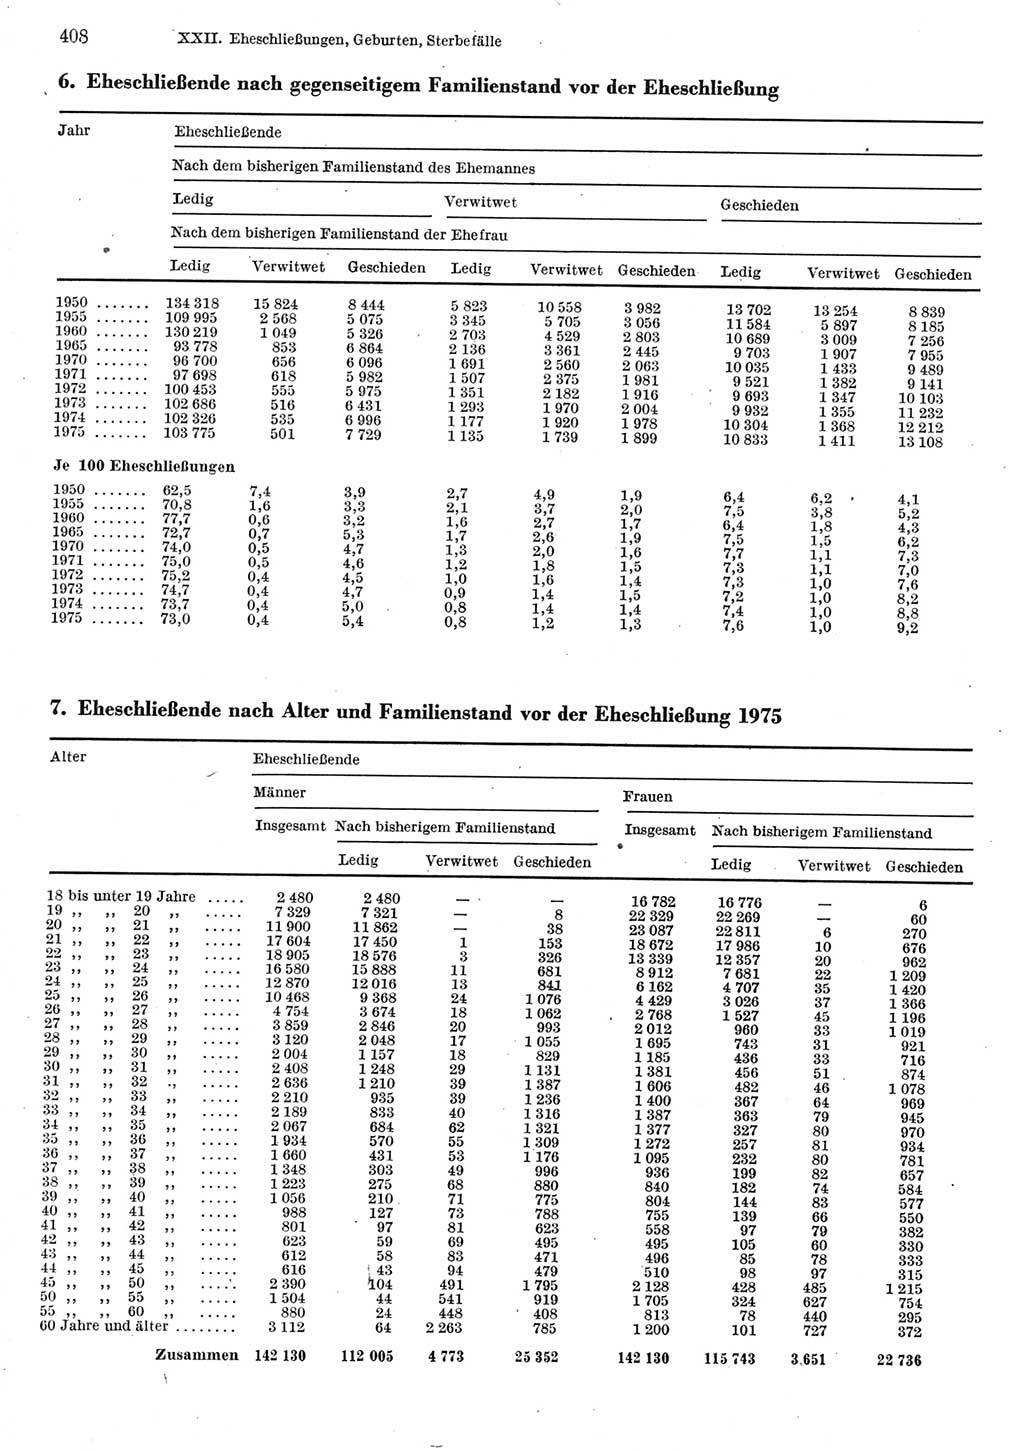 Statistisches Jahrbuch der Deutschen Demokratischen Republik (DDR) 1977, Seite 408 (Stat. Jb. DDR 1977, S. 408)